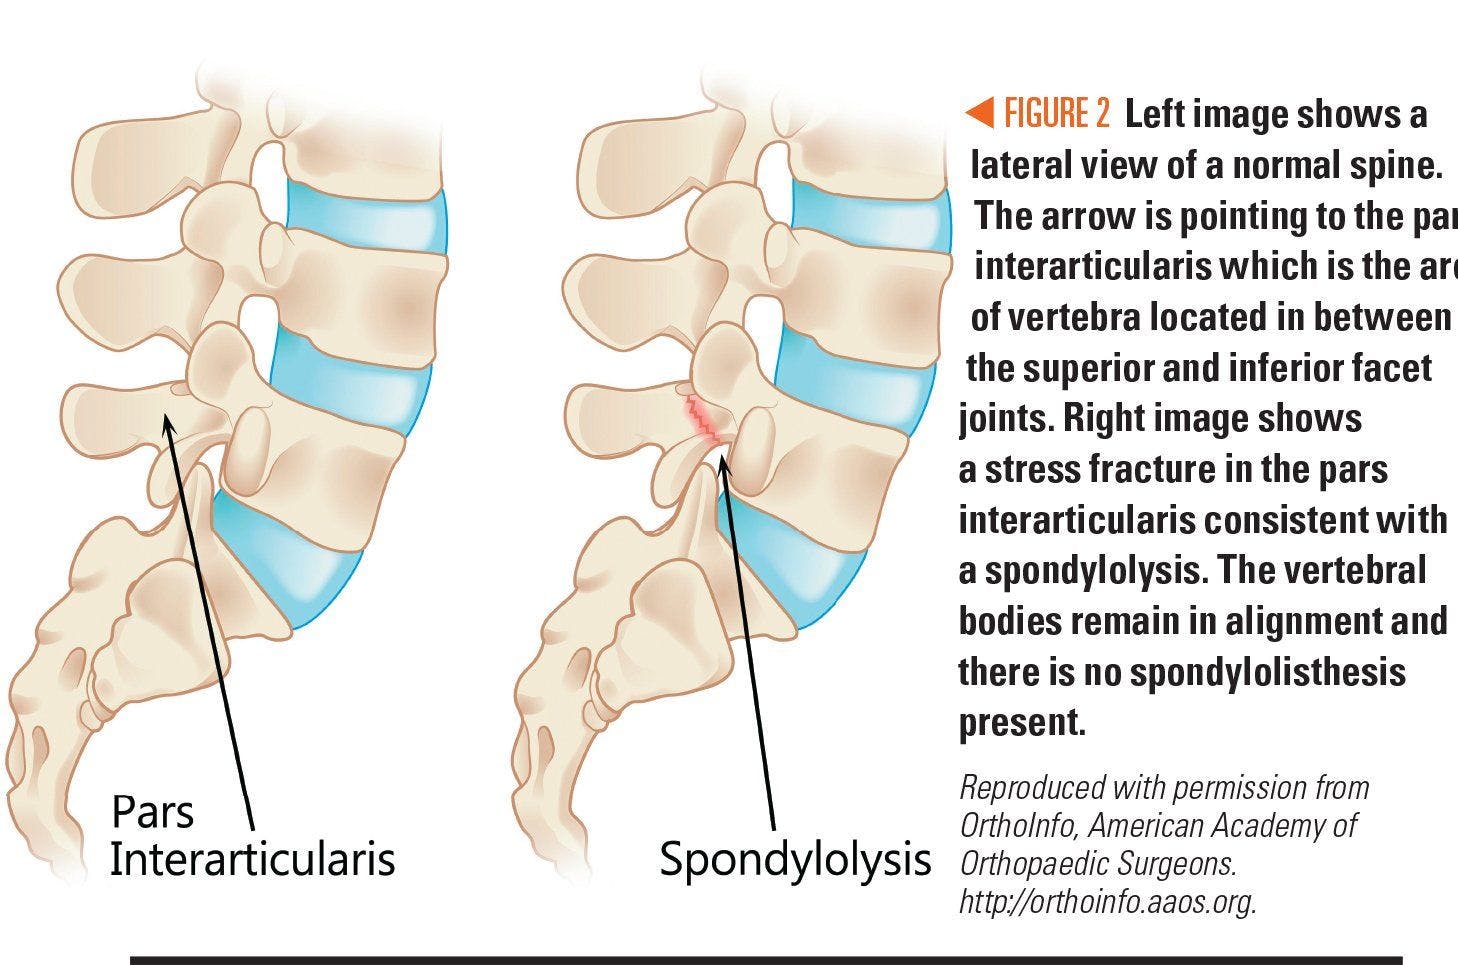 Image of spine showing spondylolysis